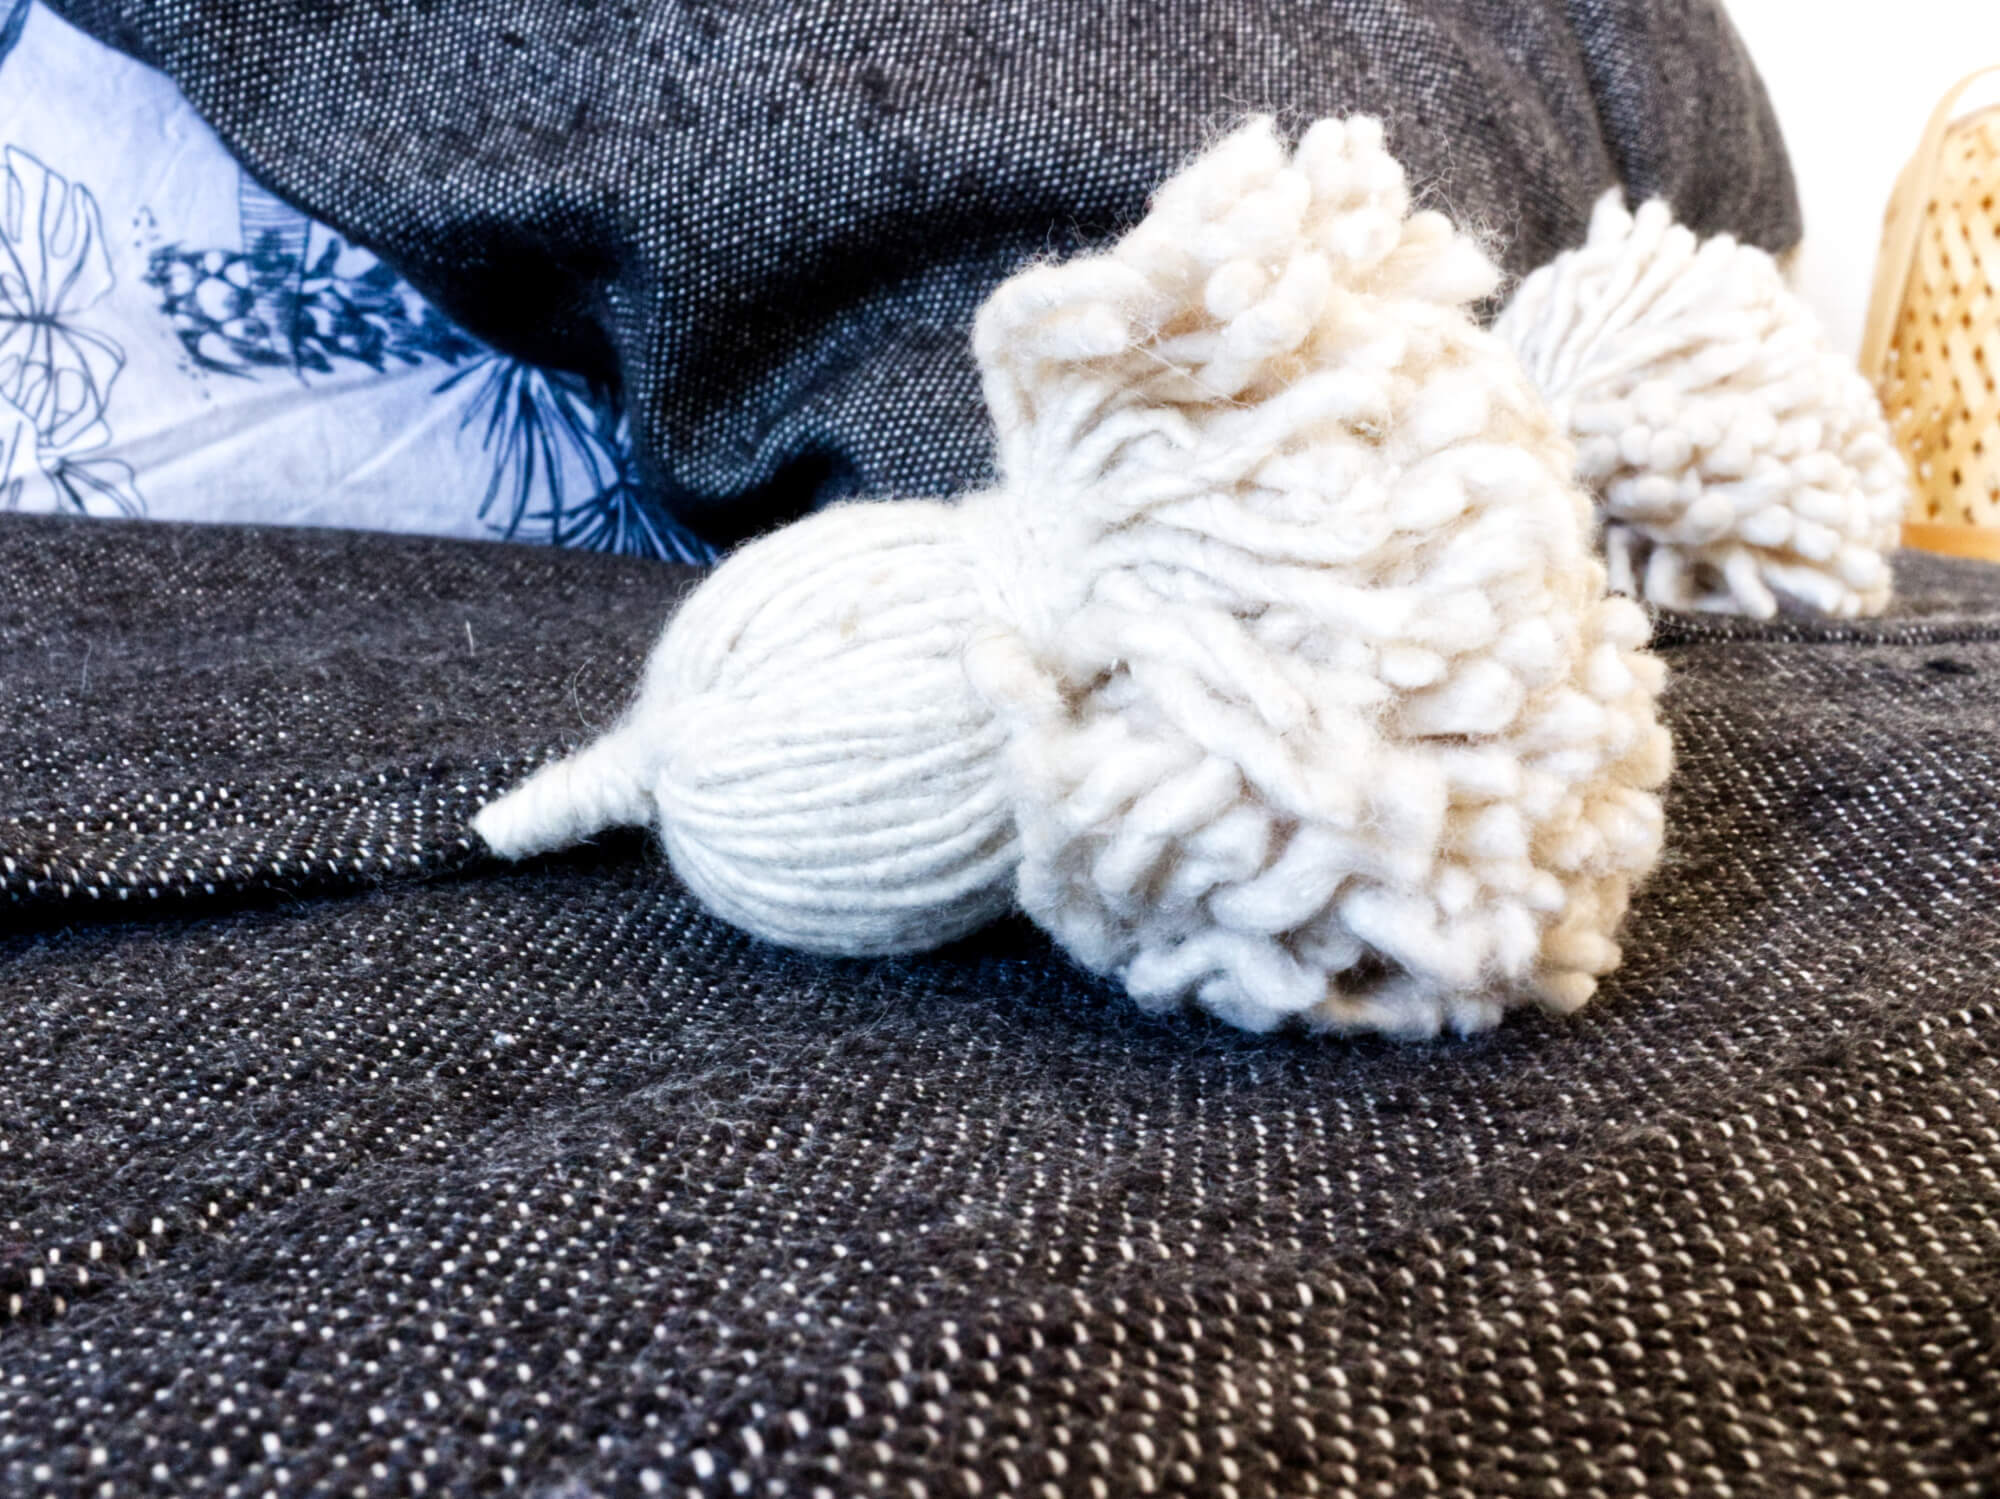 Les plaids pompon - Bulle de laine